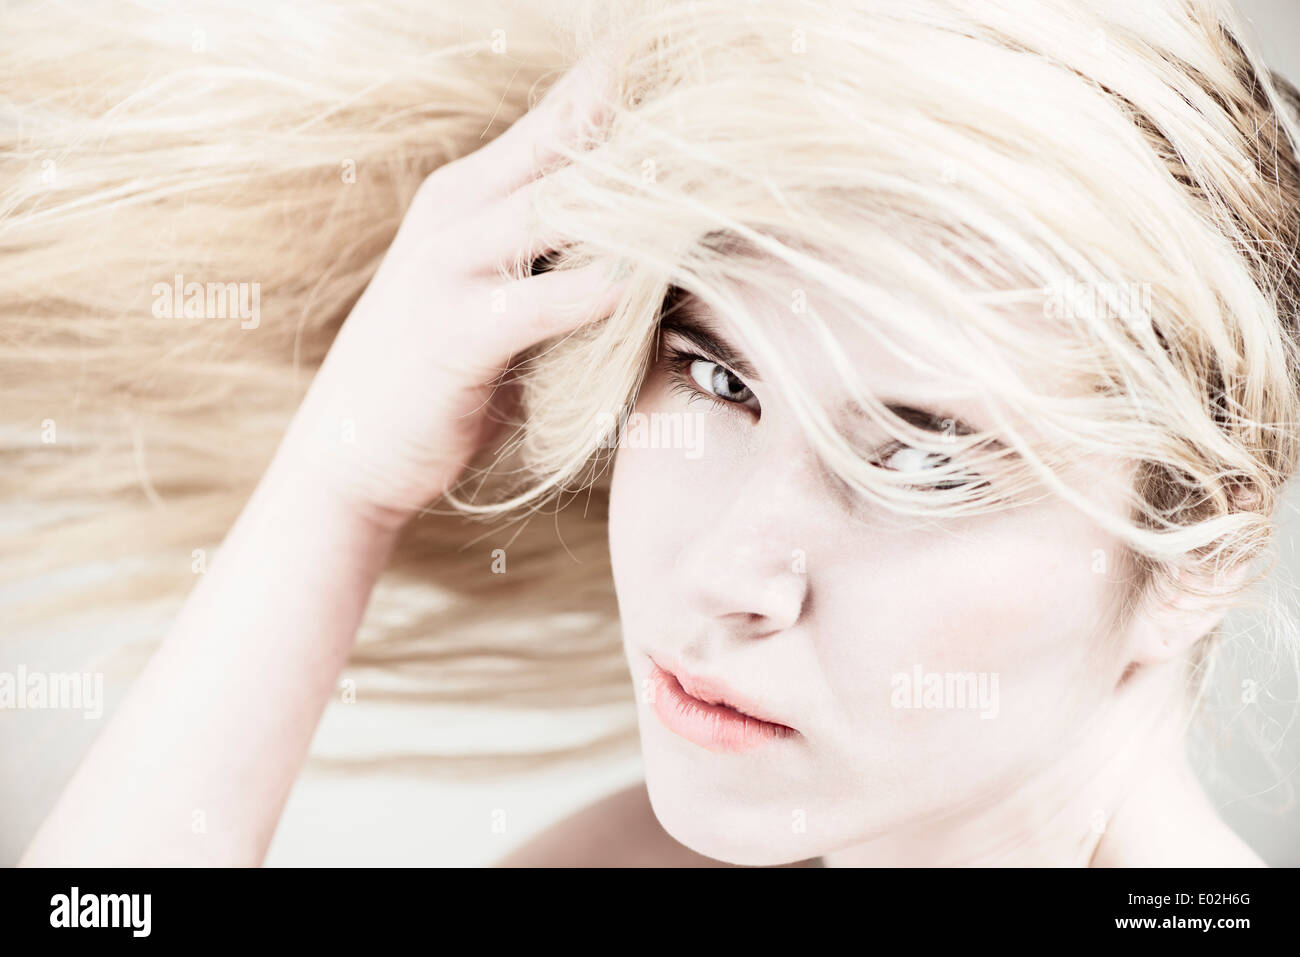 Junge schöne blonde Frau mit langen Haaren. Ausdruck von coole Haltung und Persönlichkeit zeigen. Stockfoto